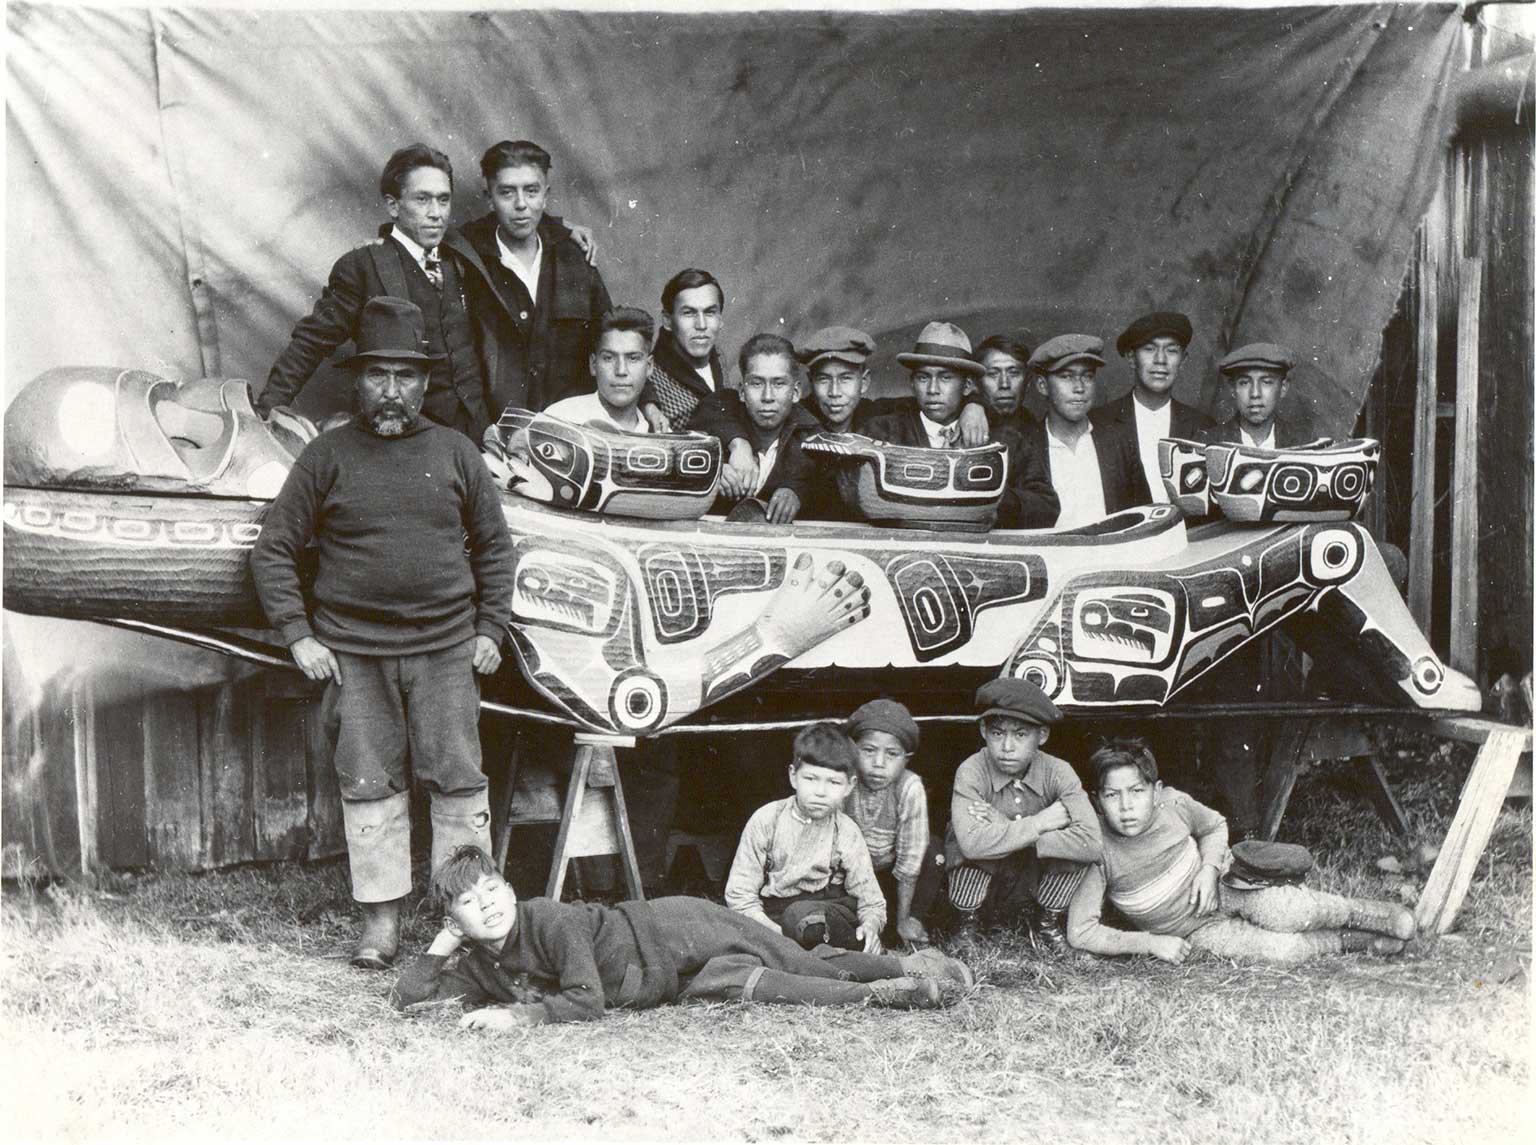 Photographie noir et blanc de garçons assis ou affalés devant un plat cérémoniel géant, derrière le plat se tiennent 12 jeunes hommes vêtus à l'occidentale